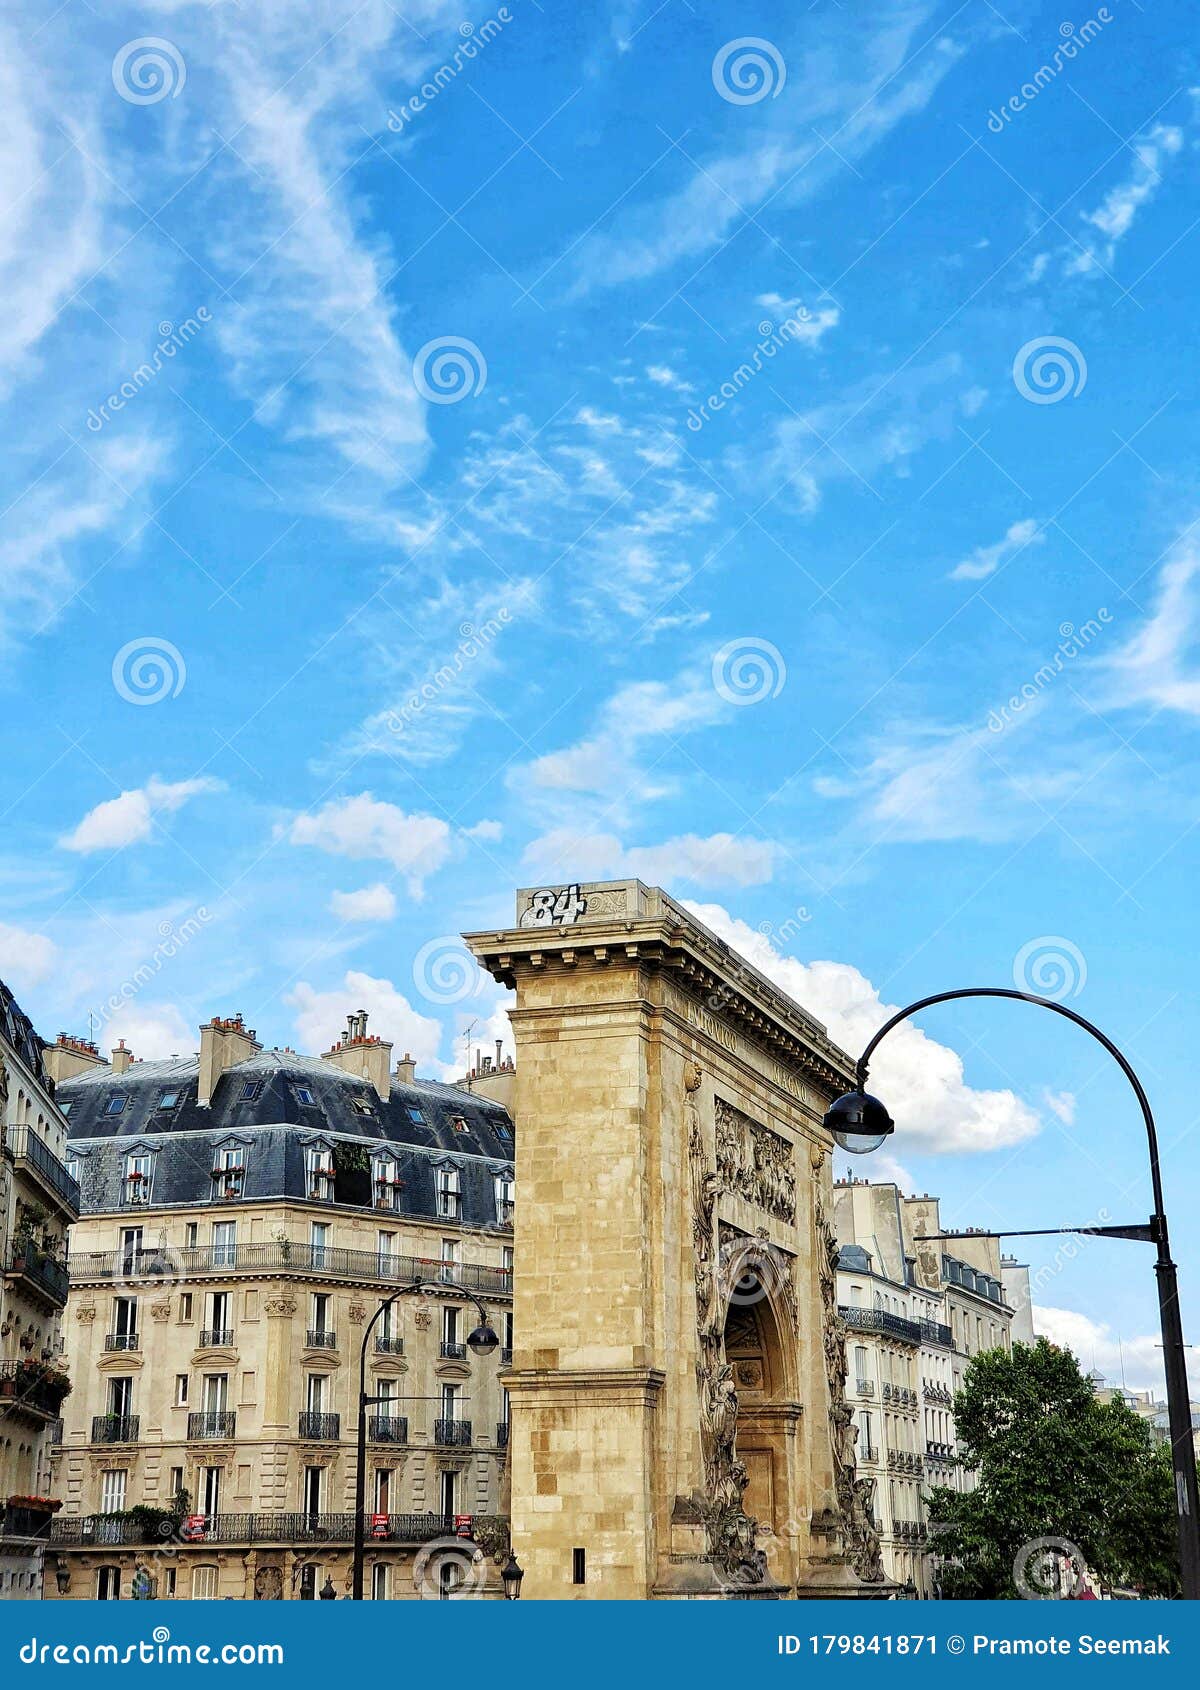 paris and the haussmannian buliding, paris, france